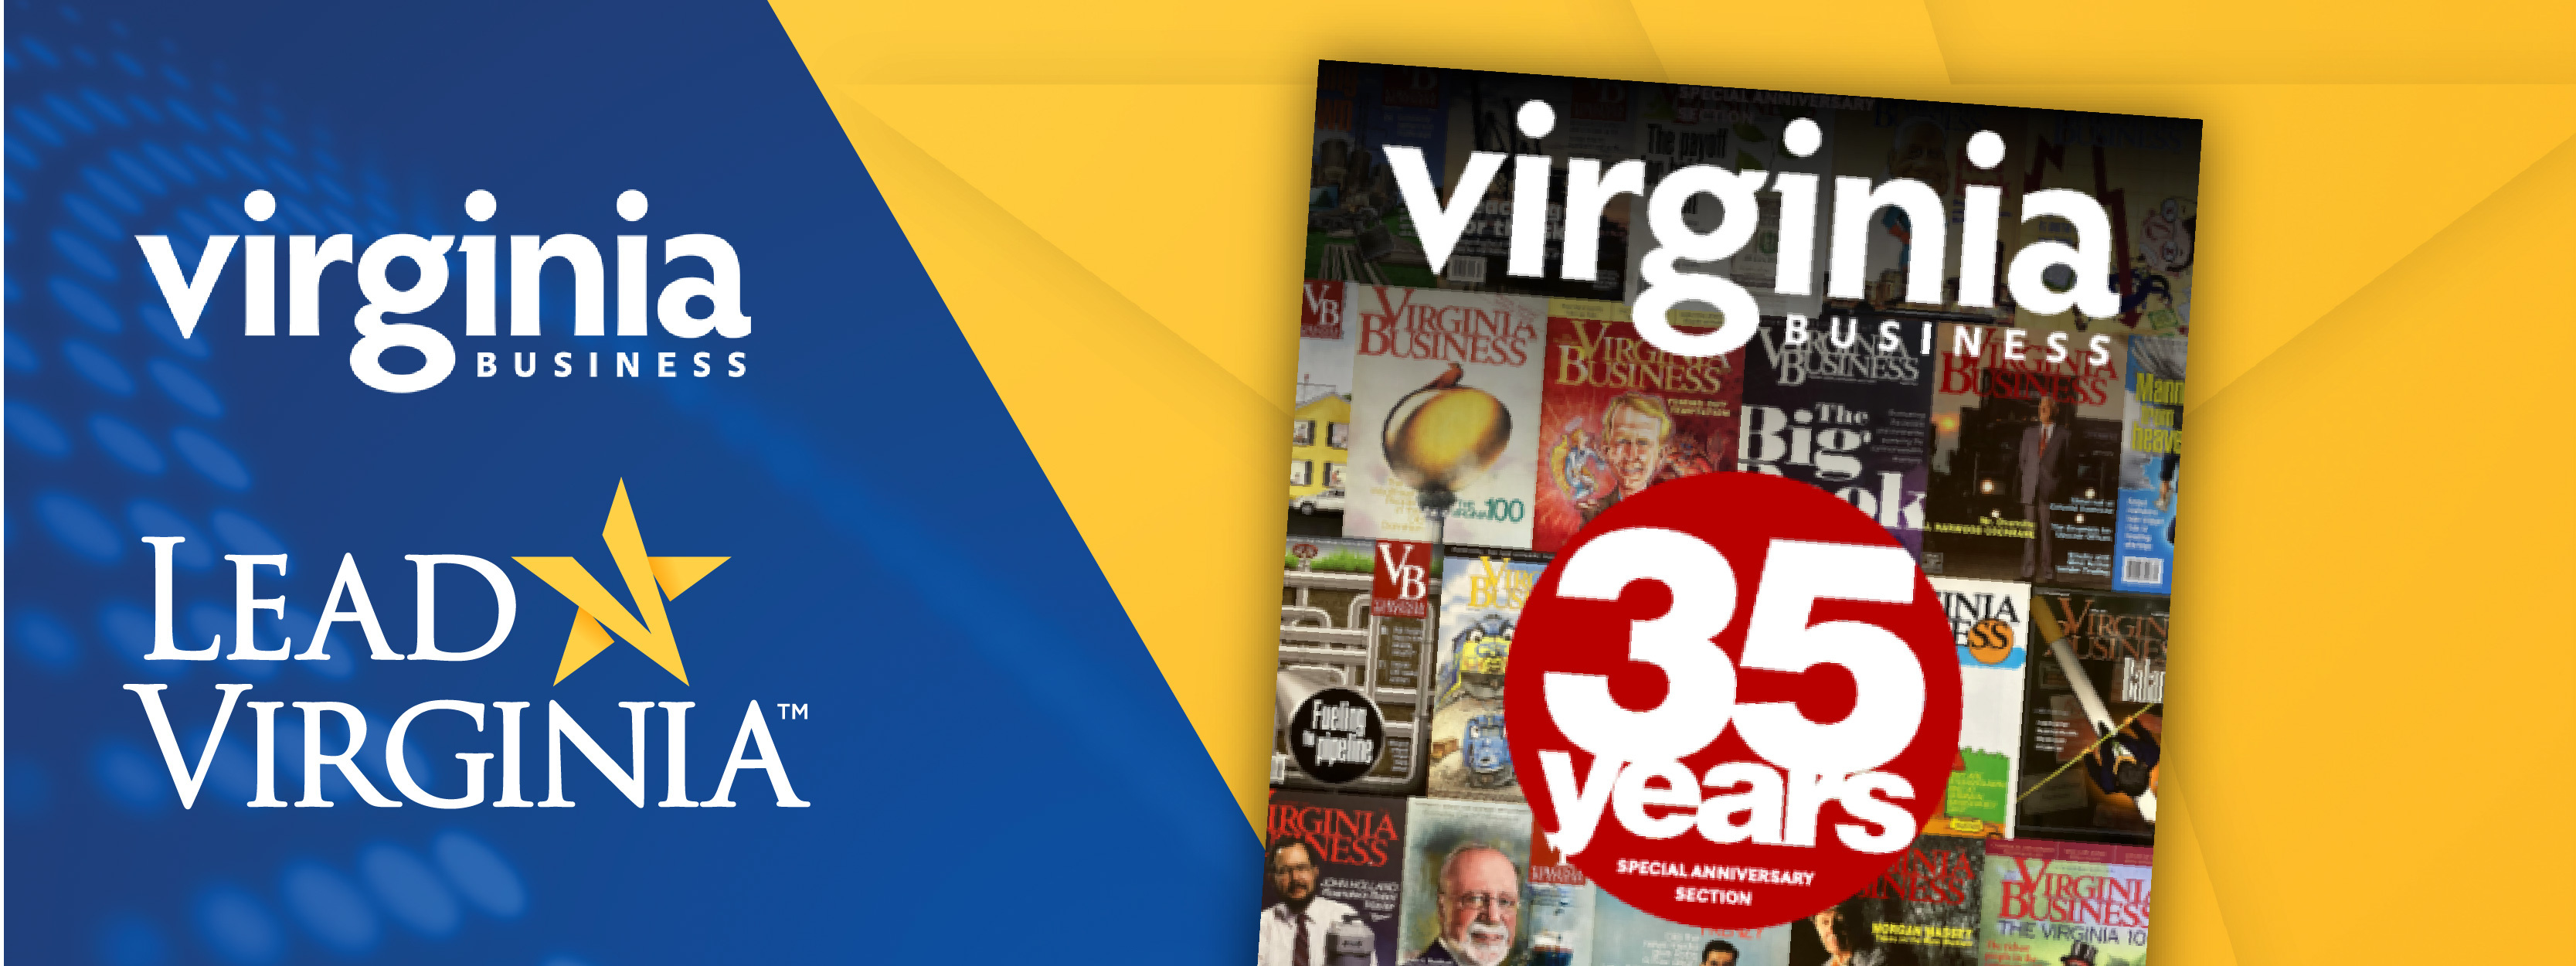 Virginia Business Magazine 35 Years